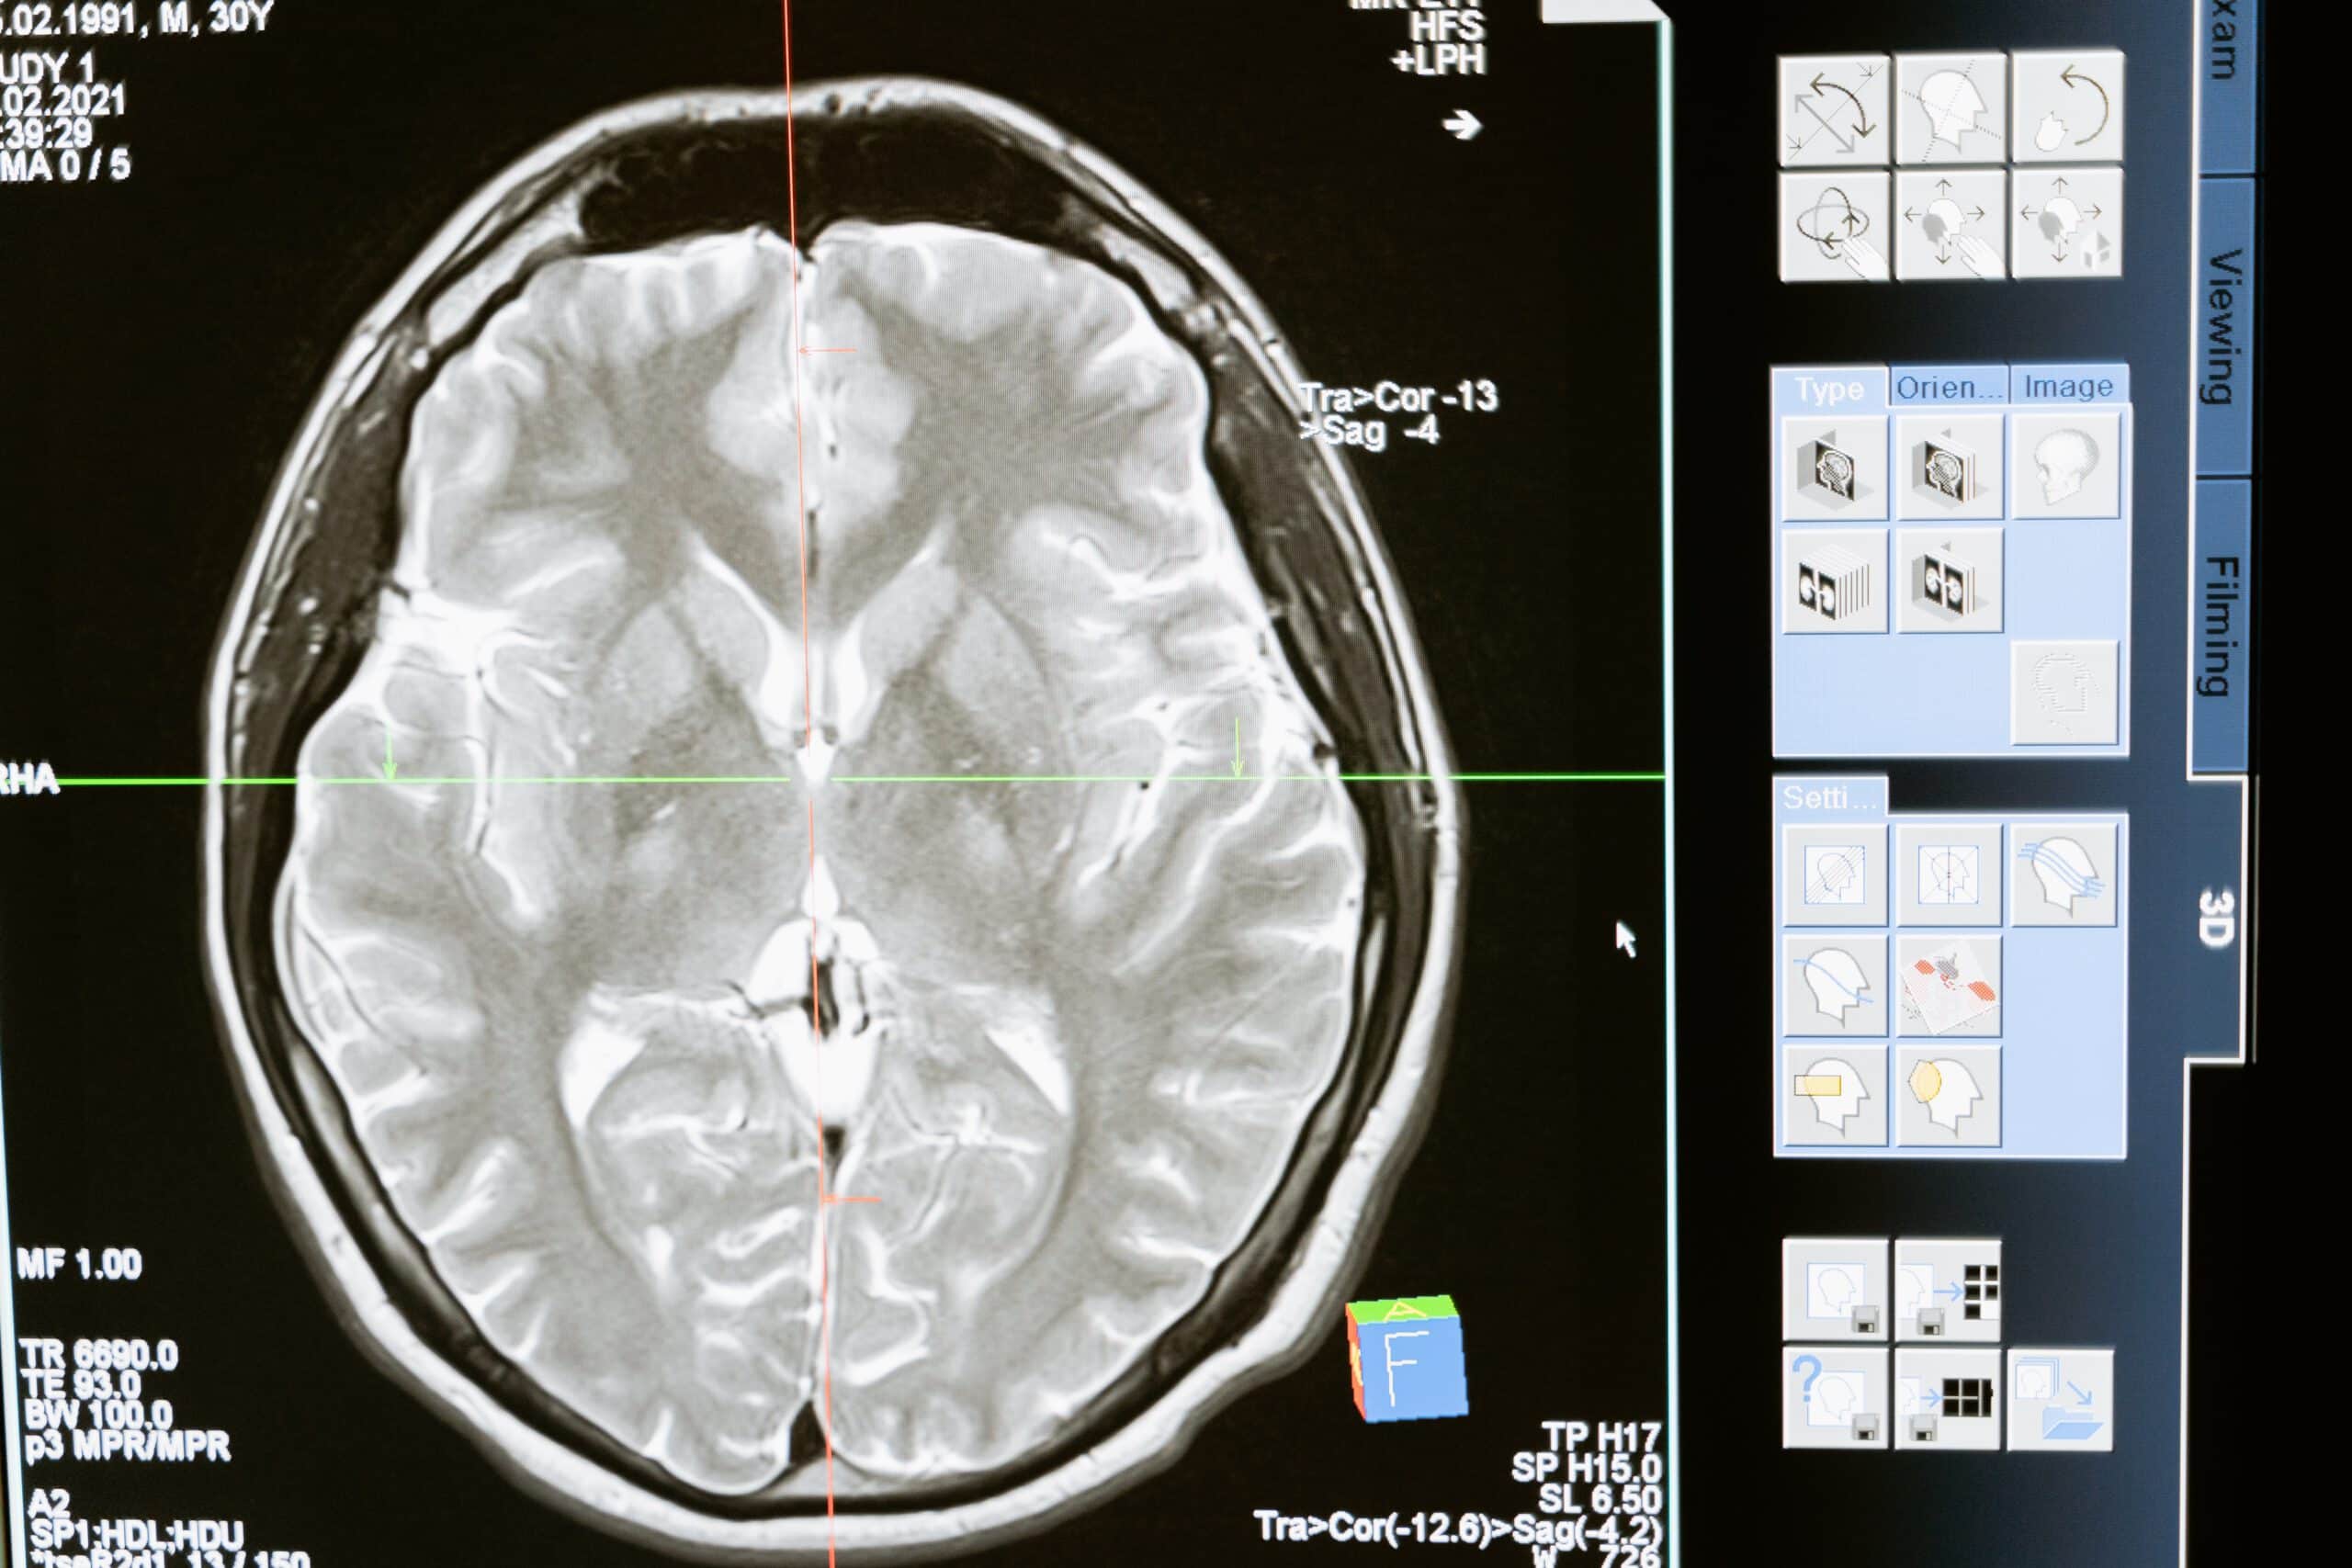 Zdjęcie rentgenowskie przysadki mózgowej